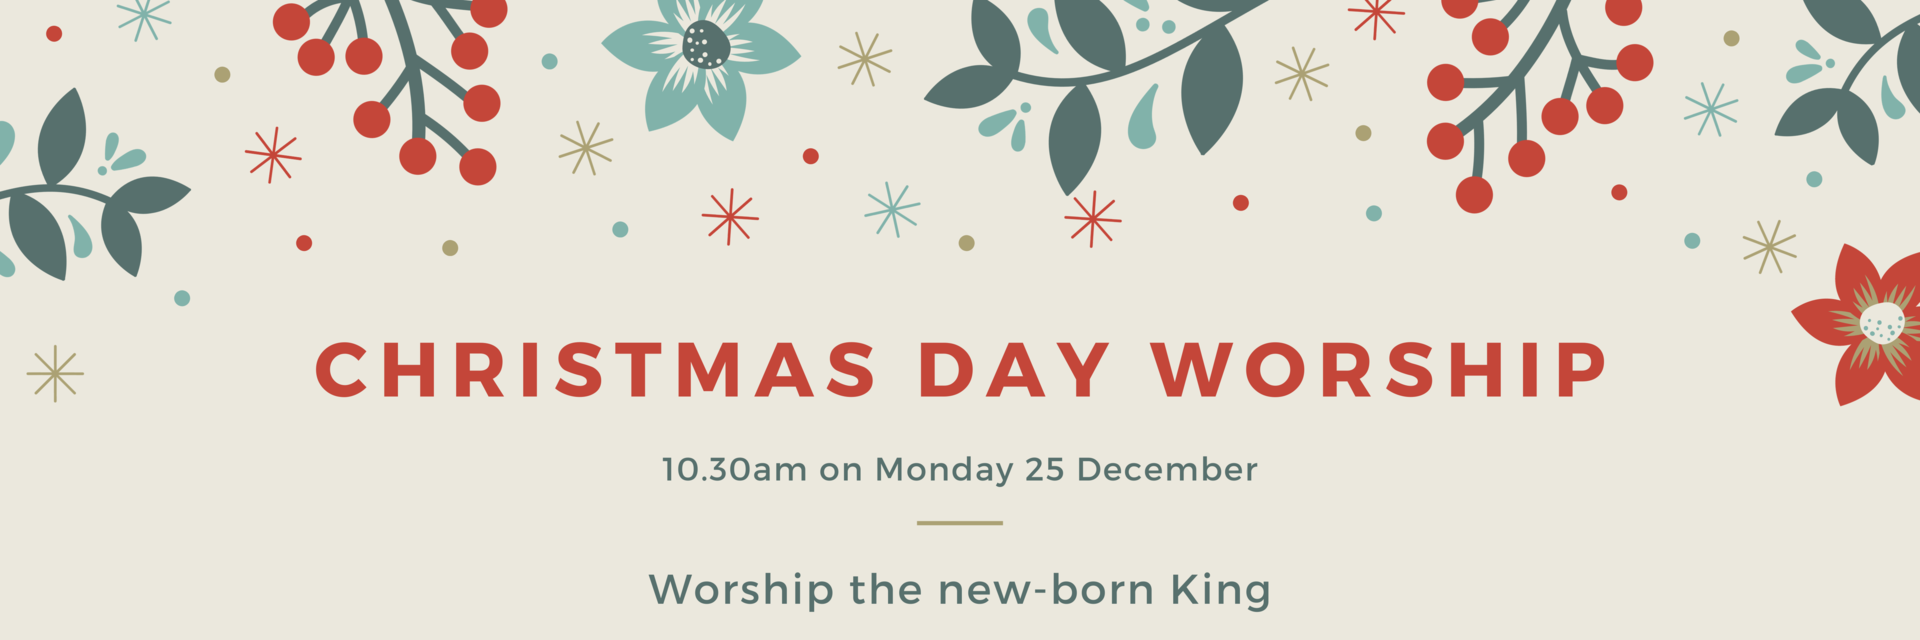 Christmas Day Worship at 10.30am